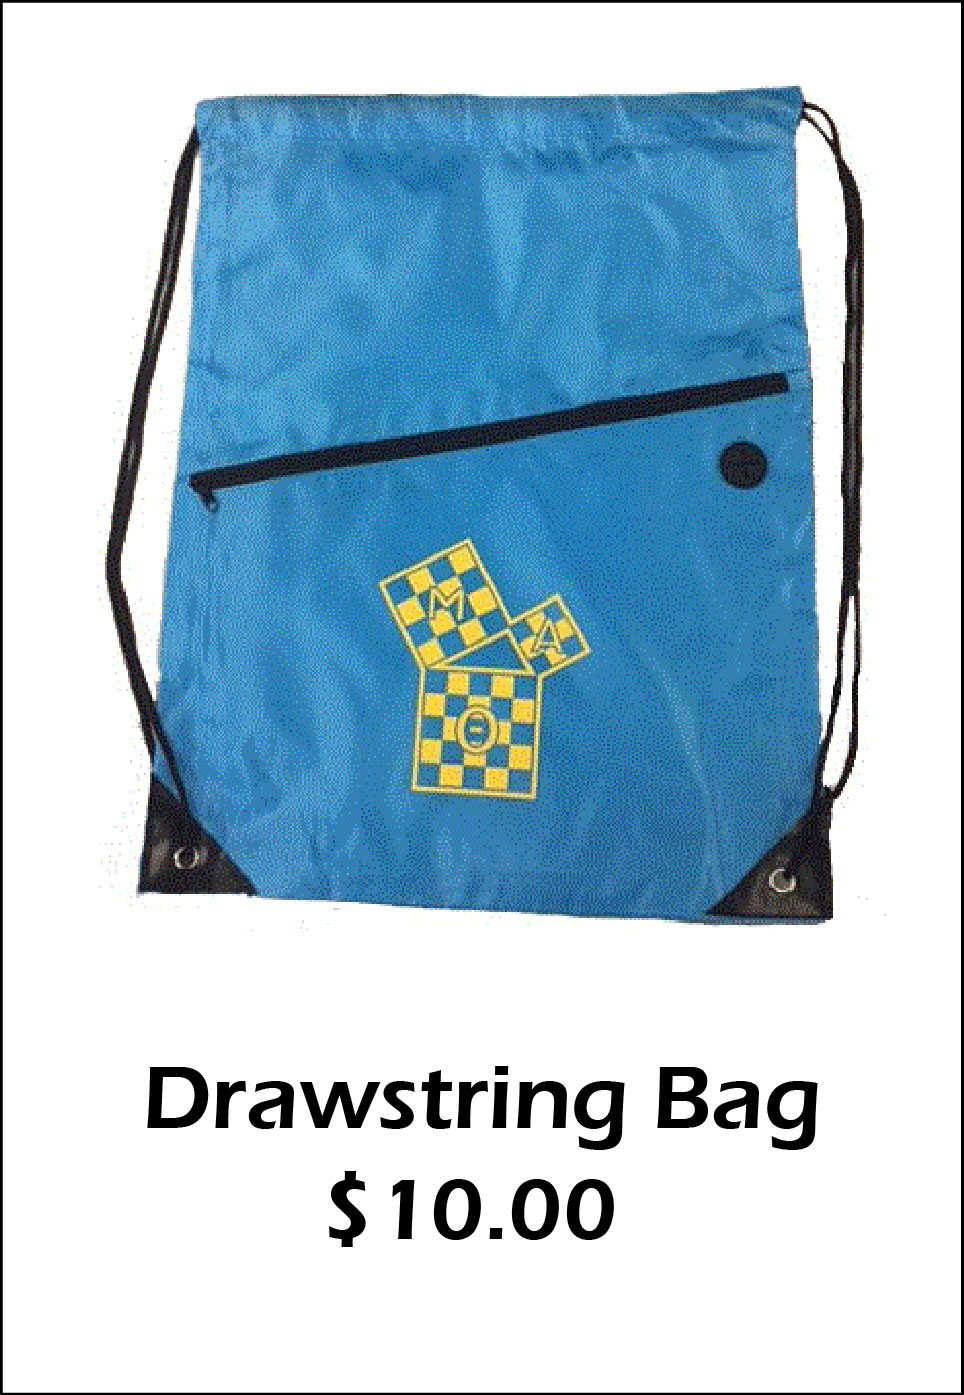 MAT Drawstring Bag - $10